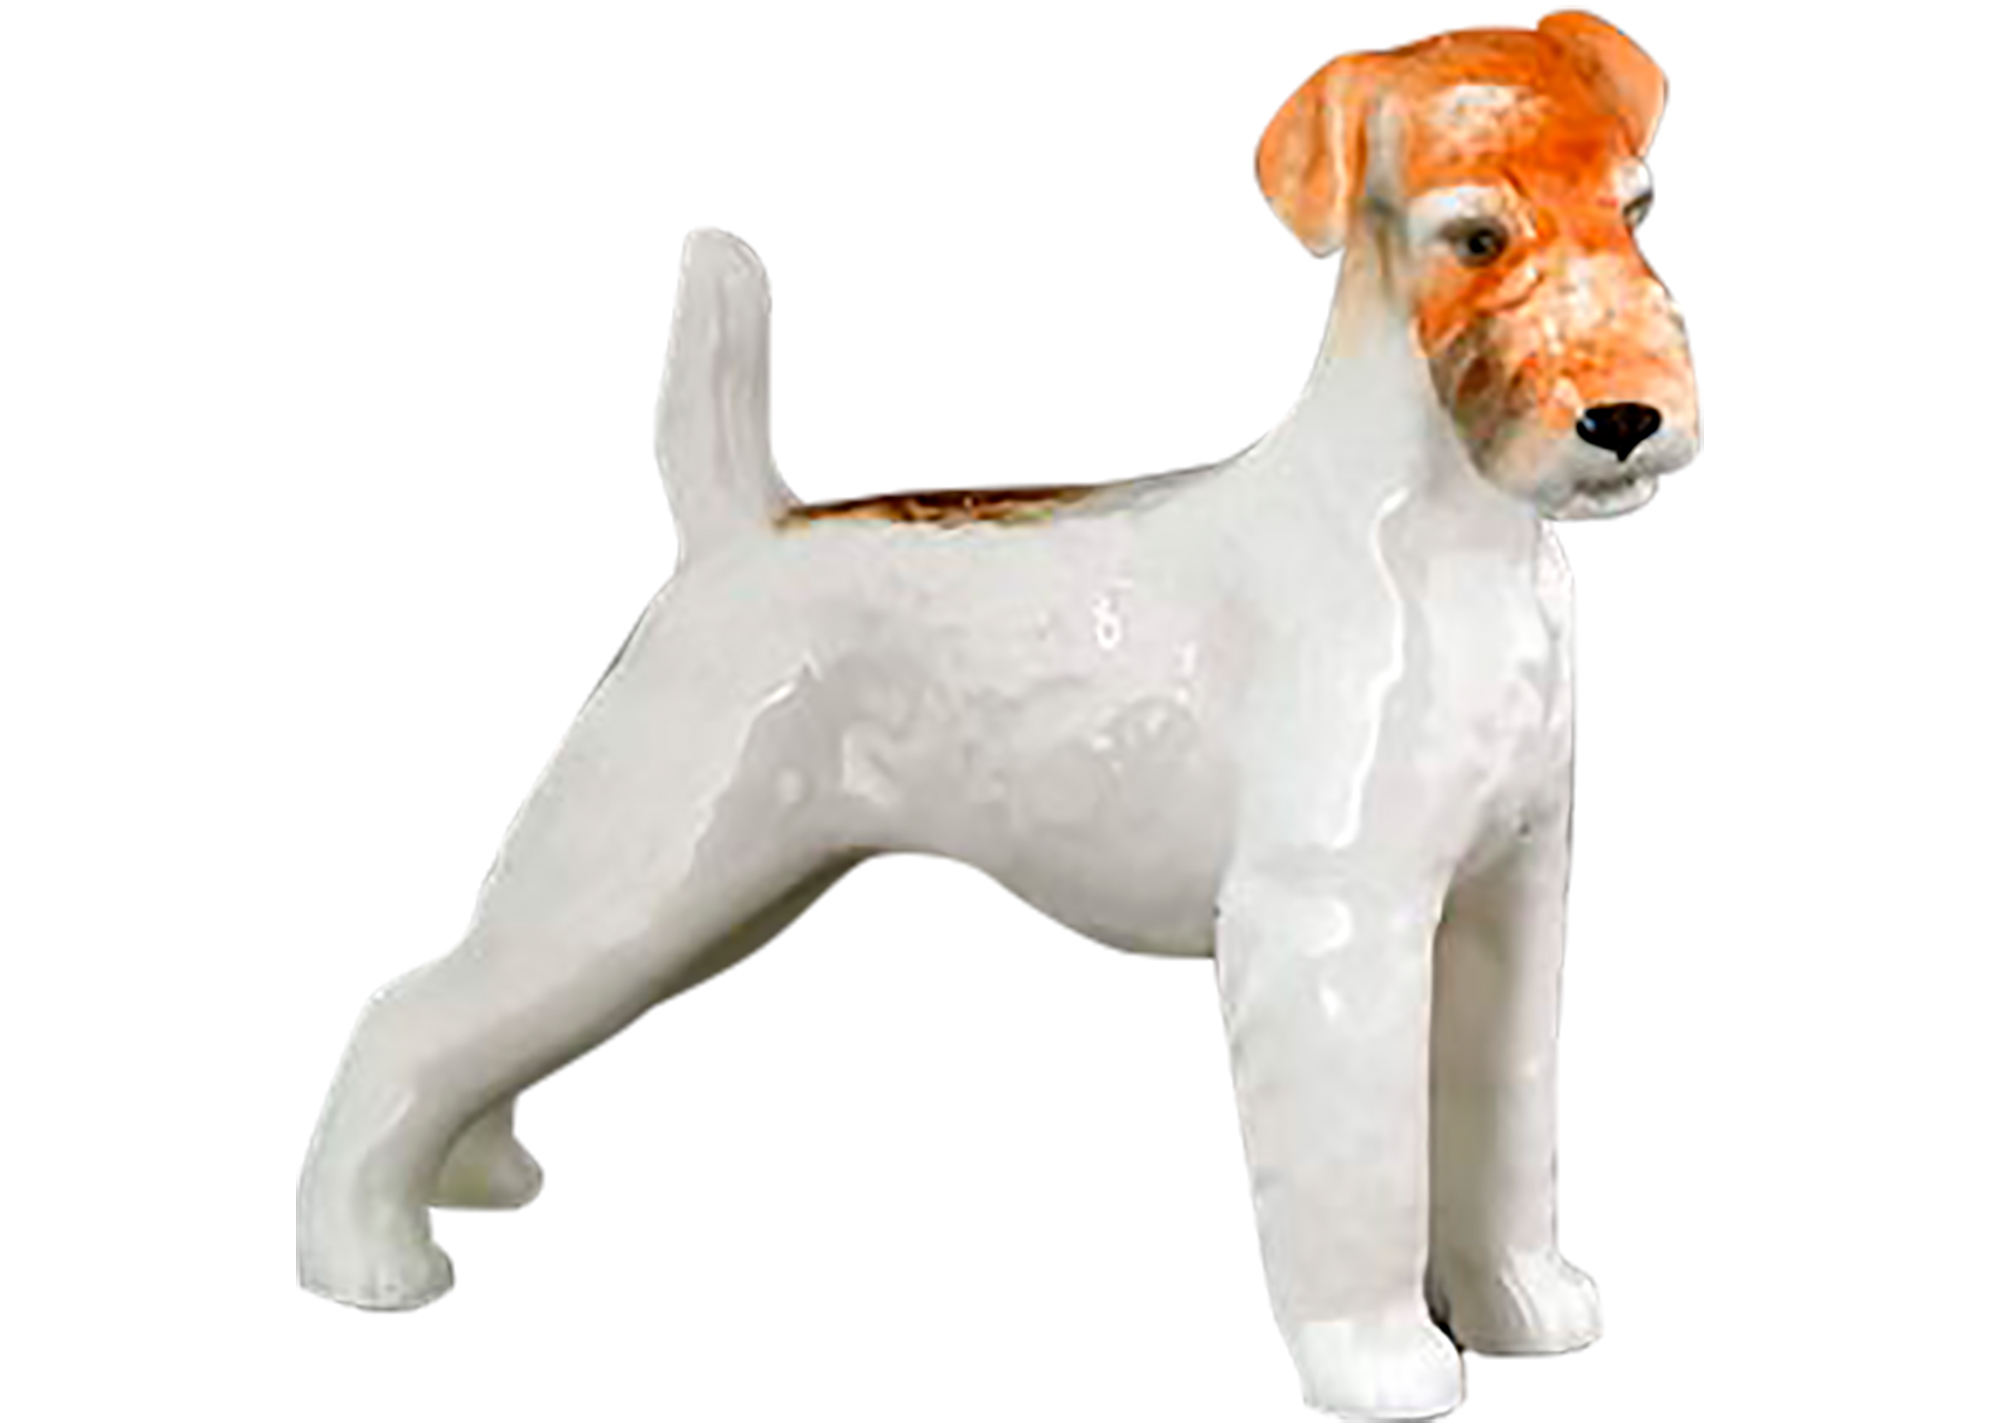 Buy Coarsehaired Terrier Dog Figurine at GoldenCockerel.com